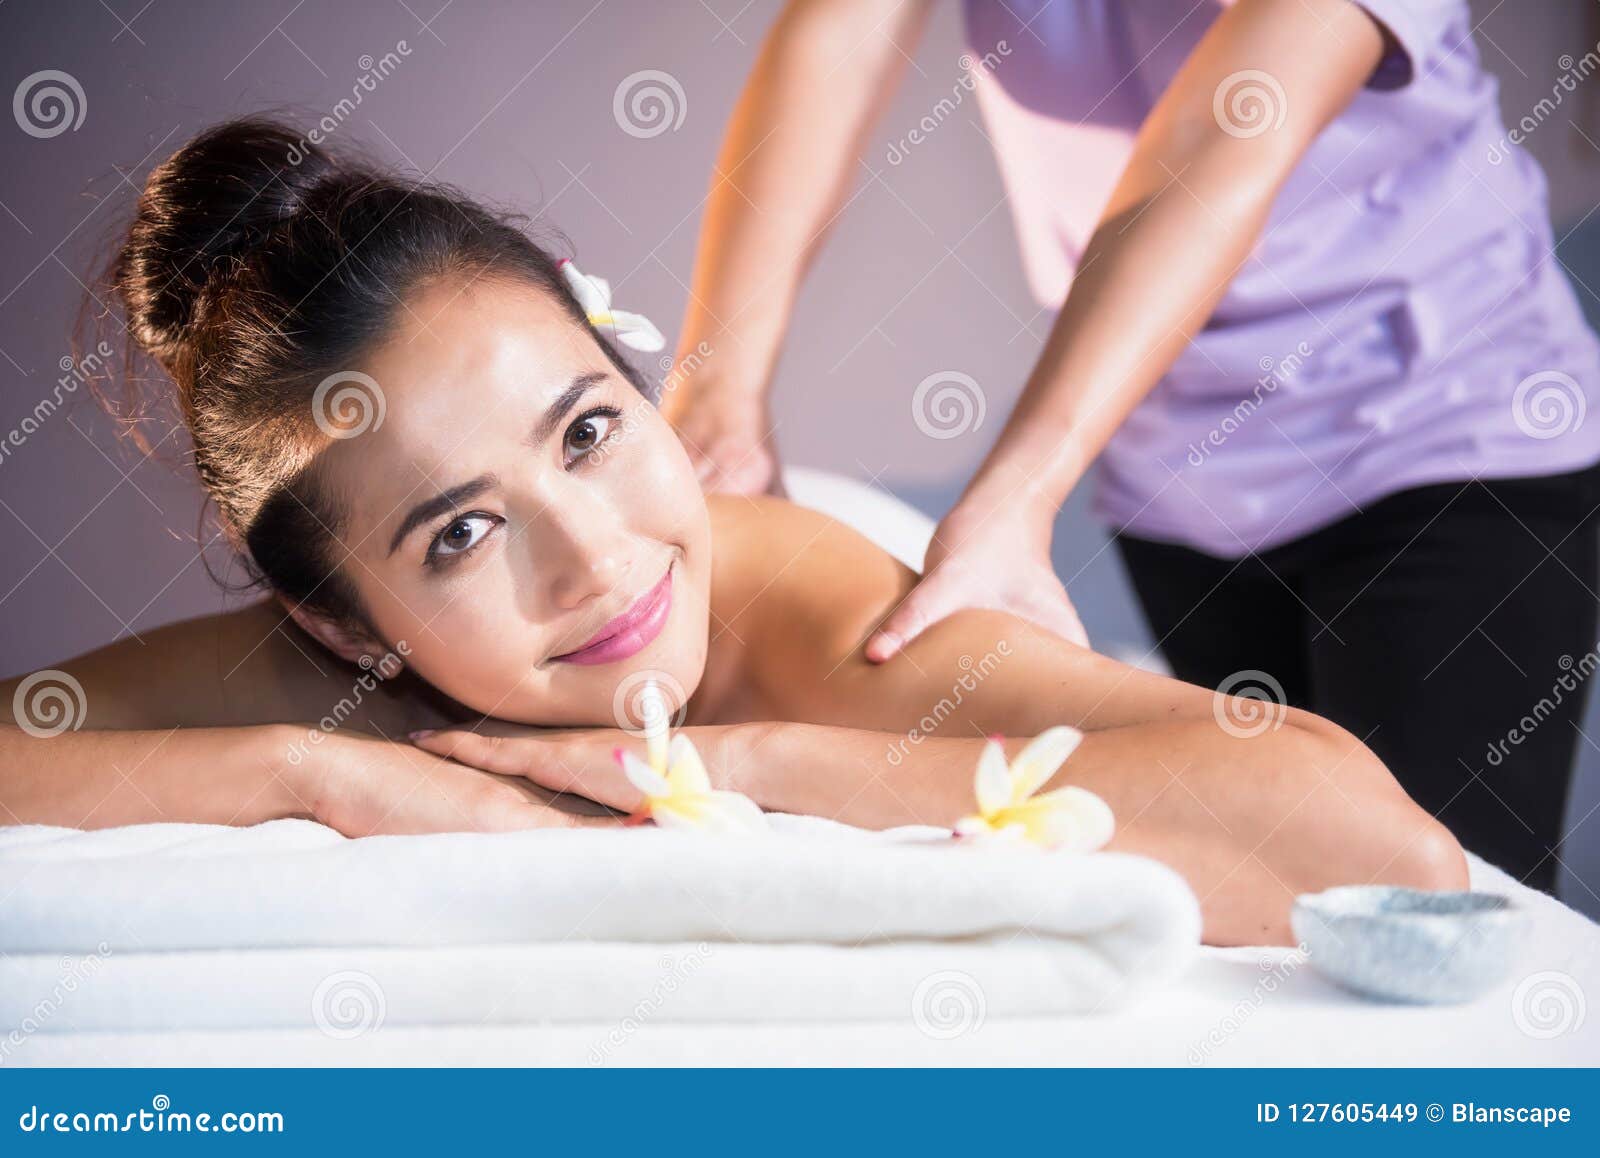 on girl massage Asian girl oil